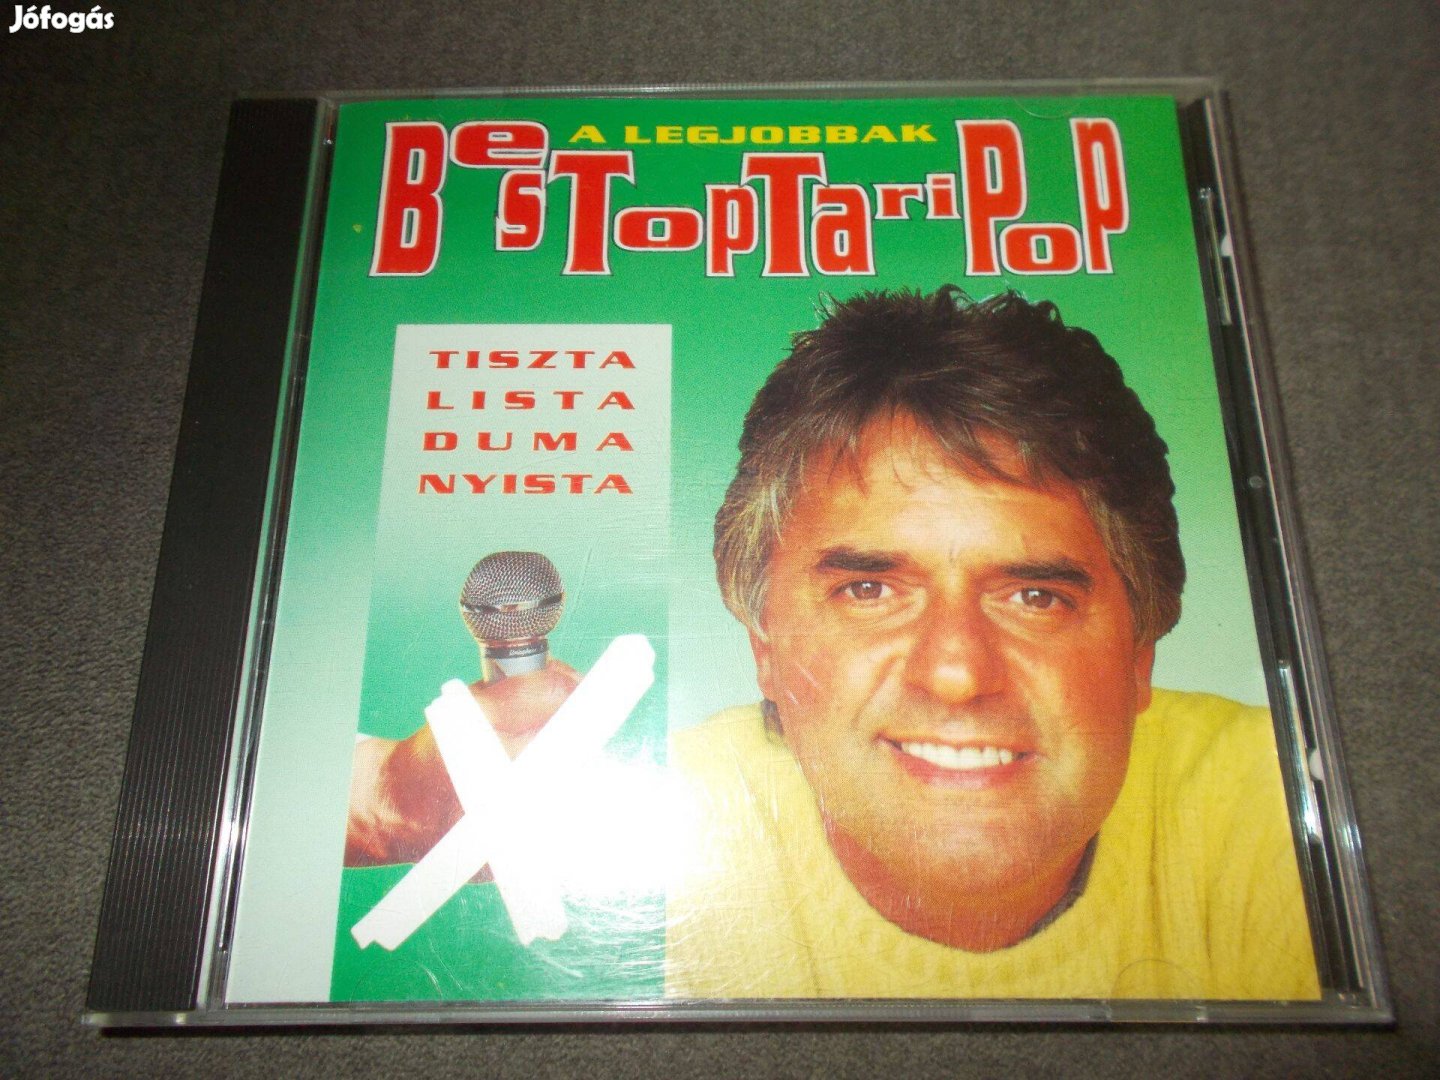 Bestoptaritop 92' CD